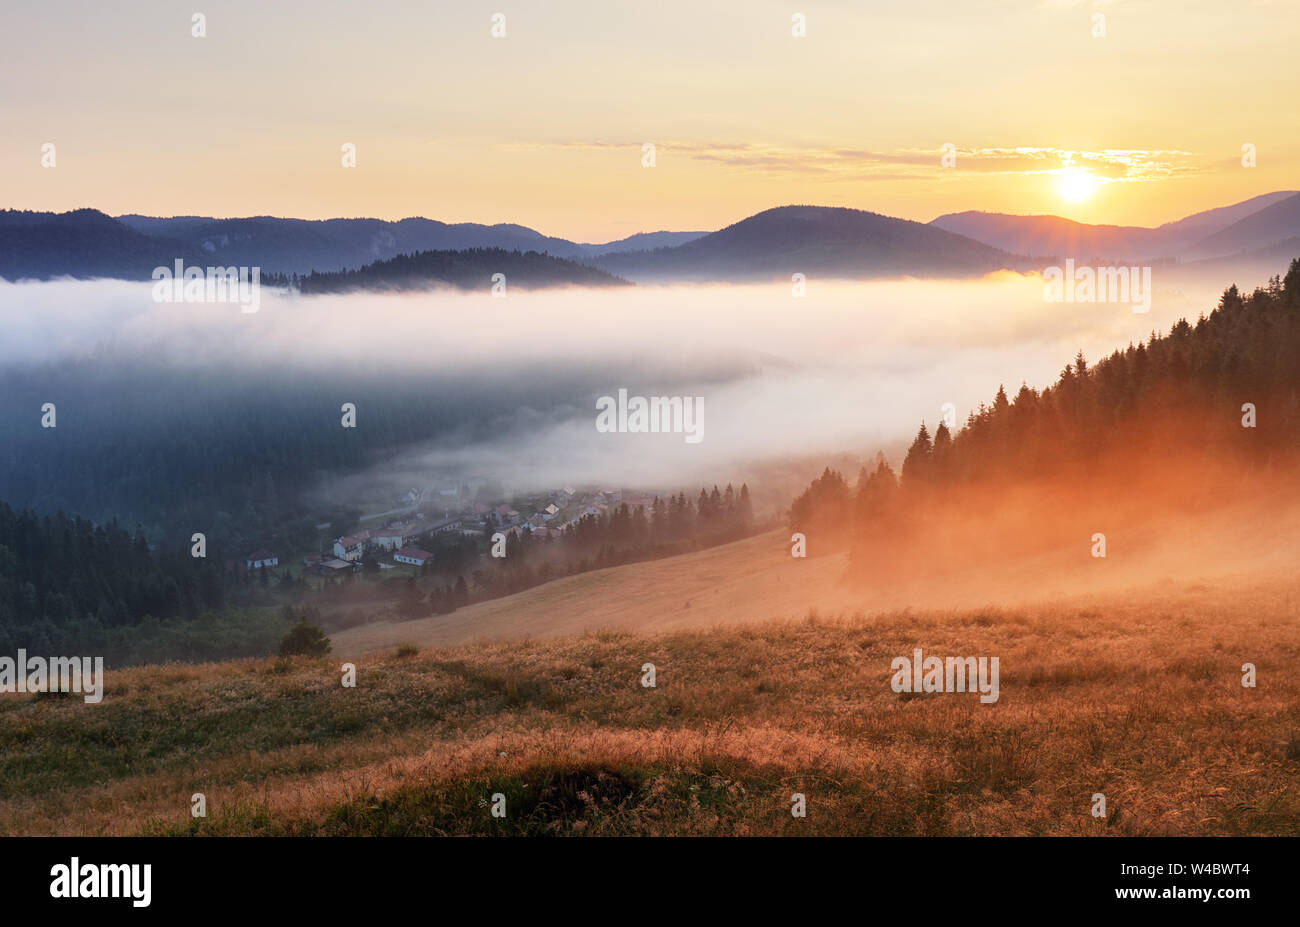 Misty sunrise with sun and forest, Mlynky, Slovakia Stock Photo